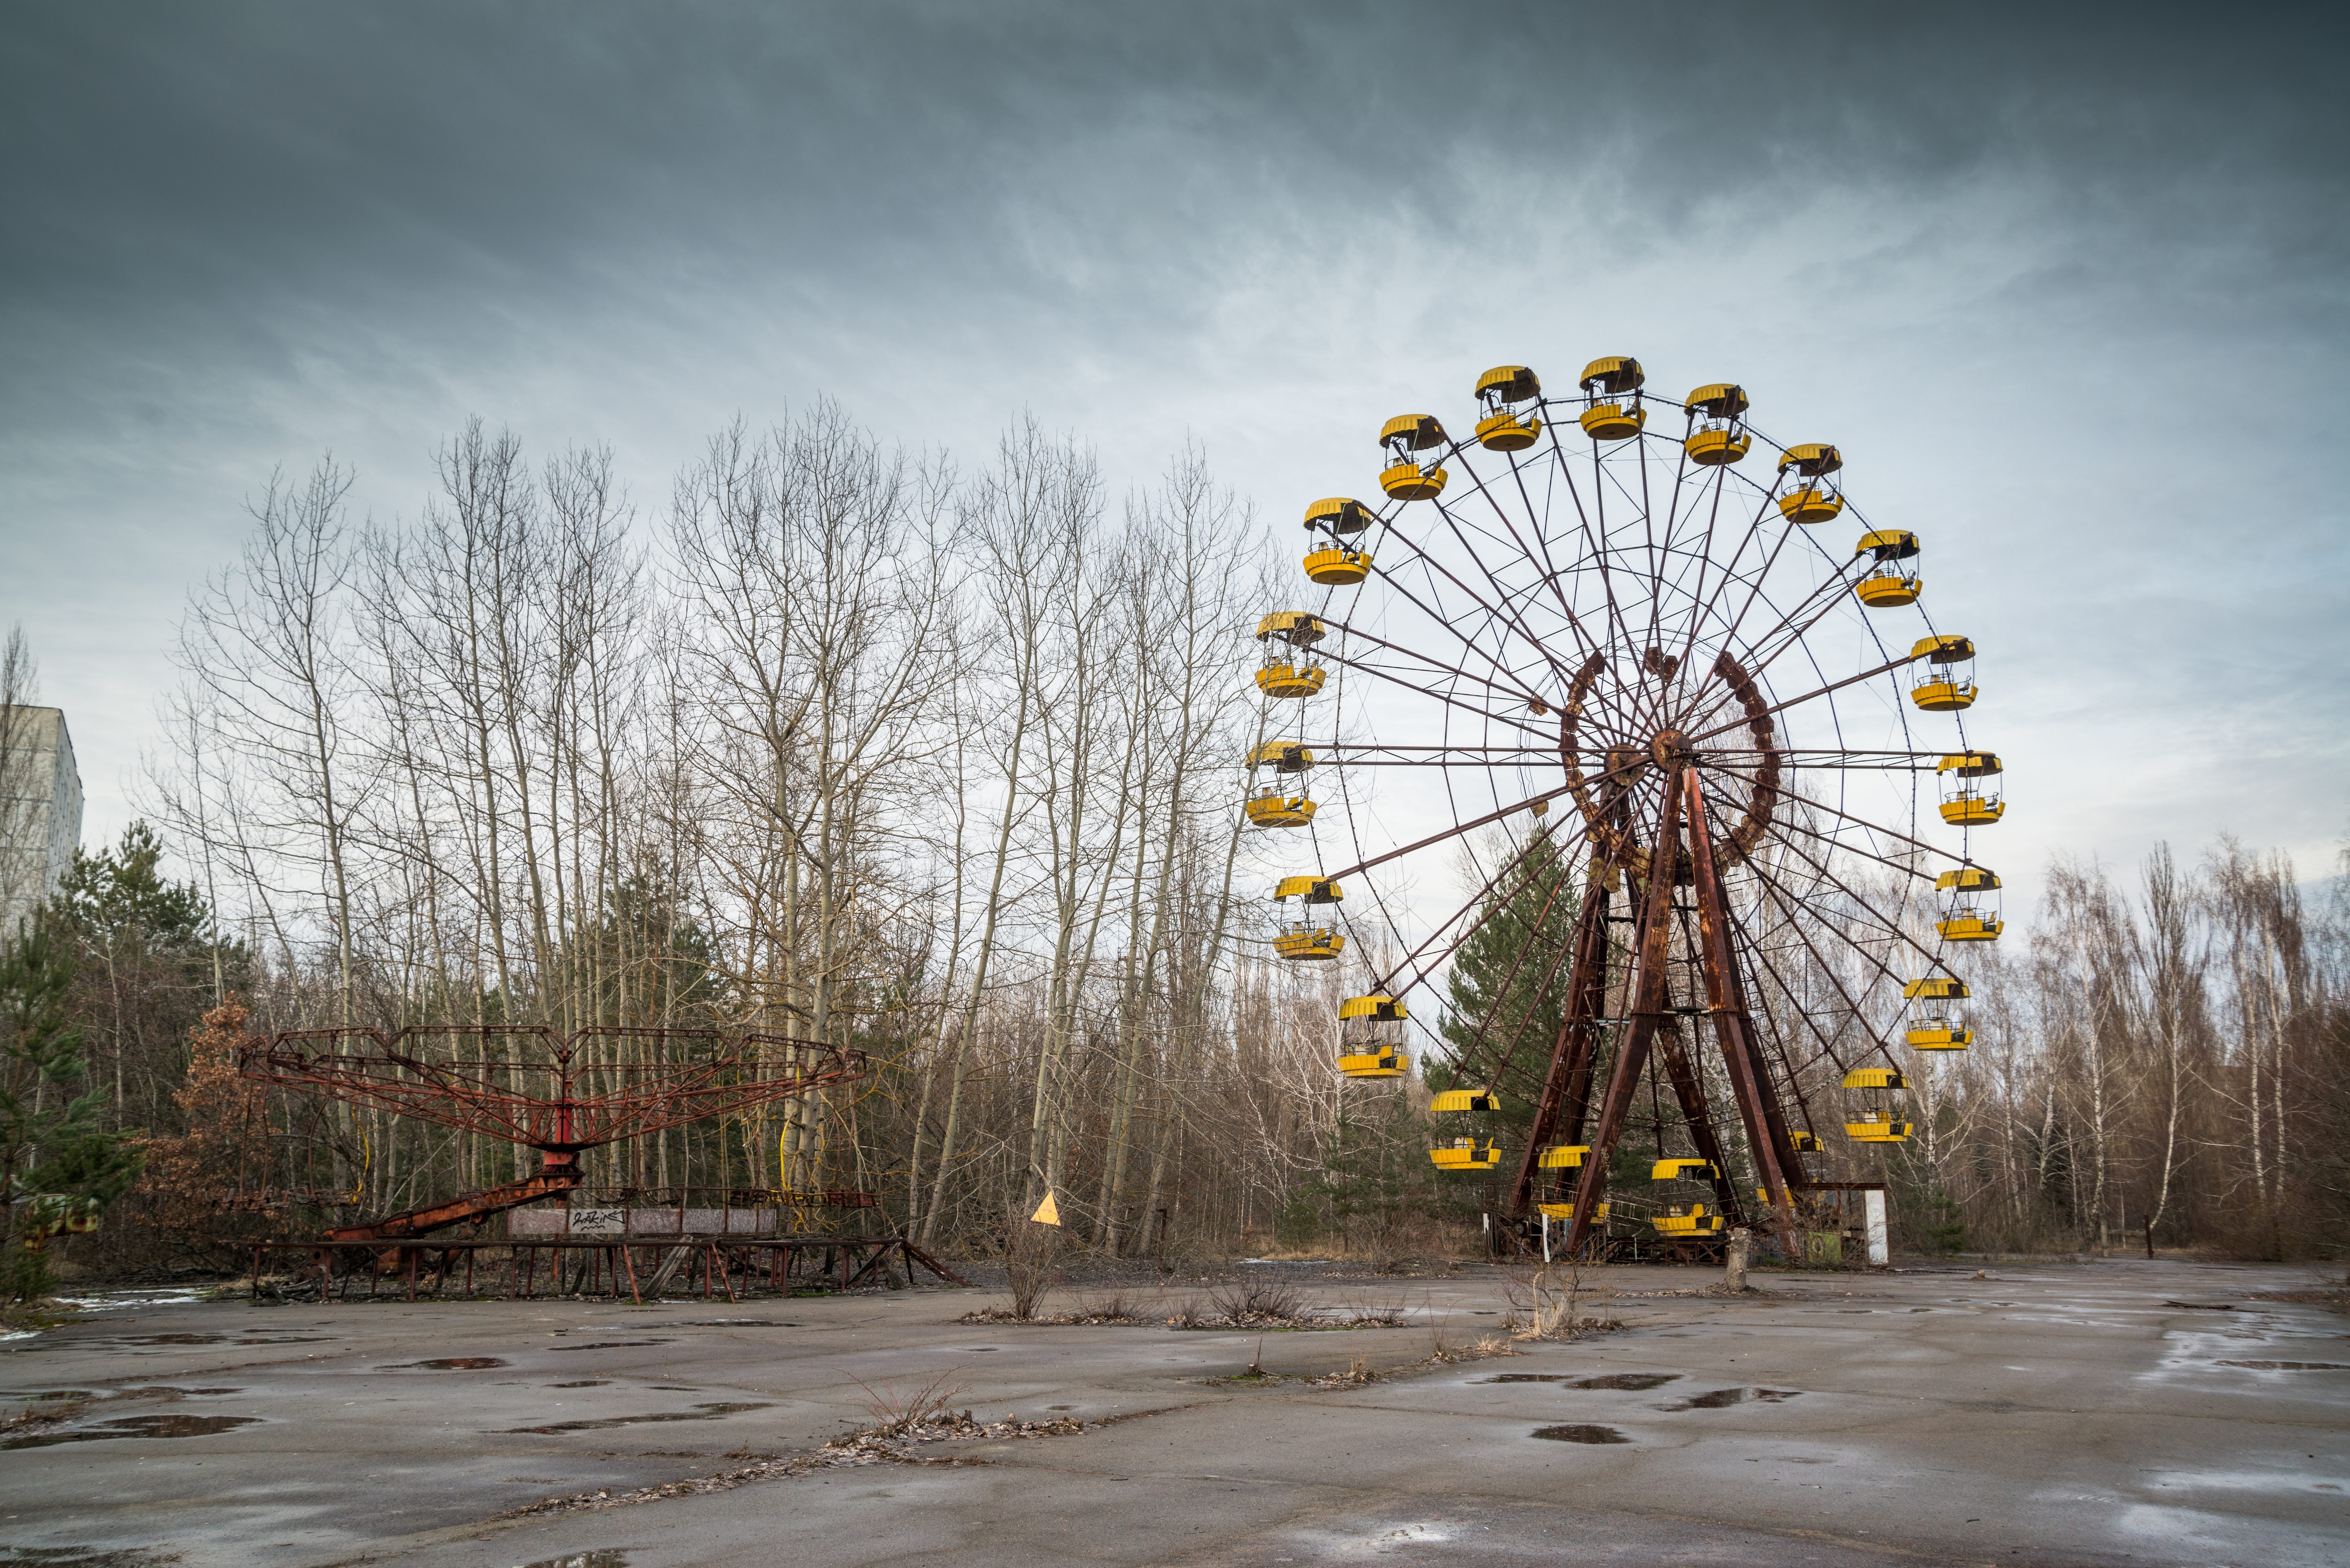 Припять. Припять Чернобыль ЧАЭС зона отчуждения. Припять колесо обозрения. Чернобыль зона отчуждения город Припять. Зона отчуждения Чернобыль станция Припять.